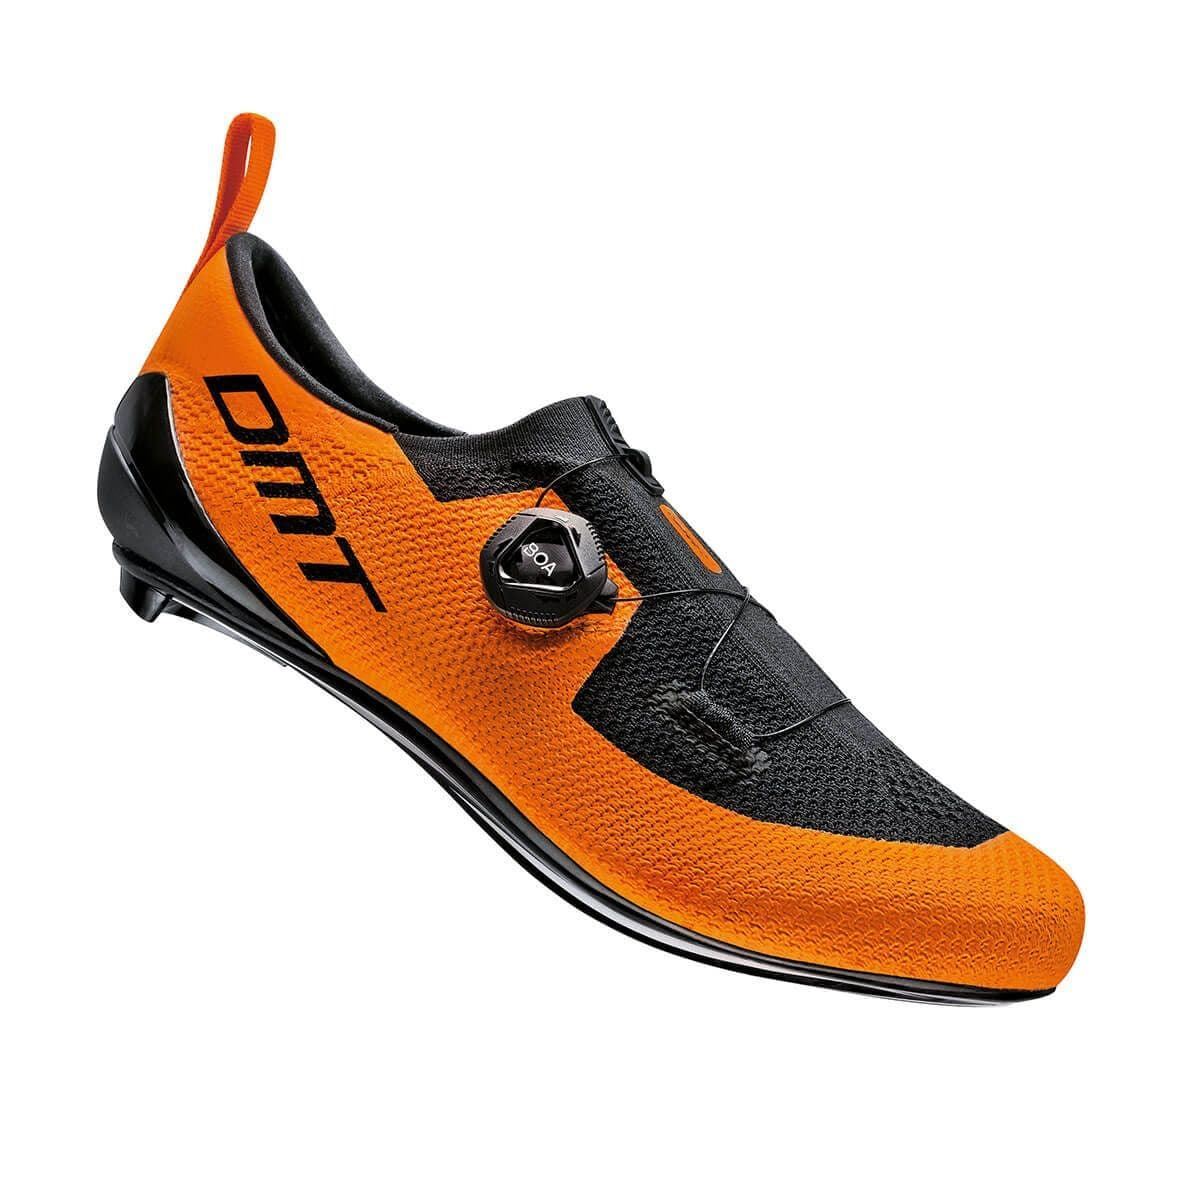 Zapatillas Triatlón DMT KT1 naranja/negro - Imagen 1